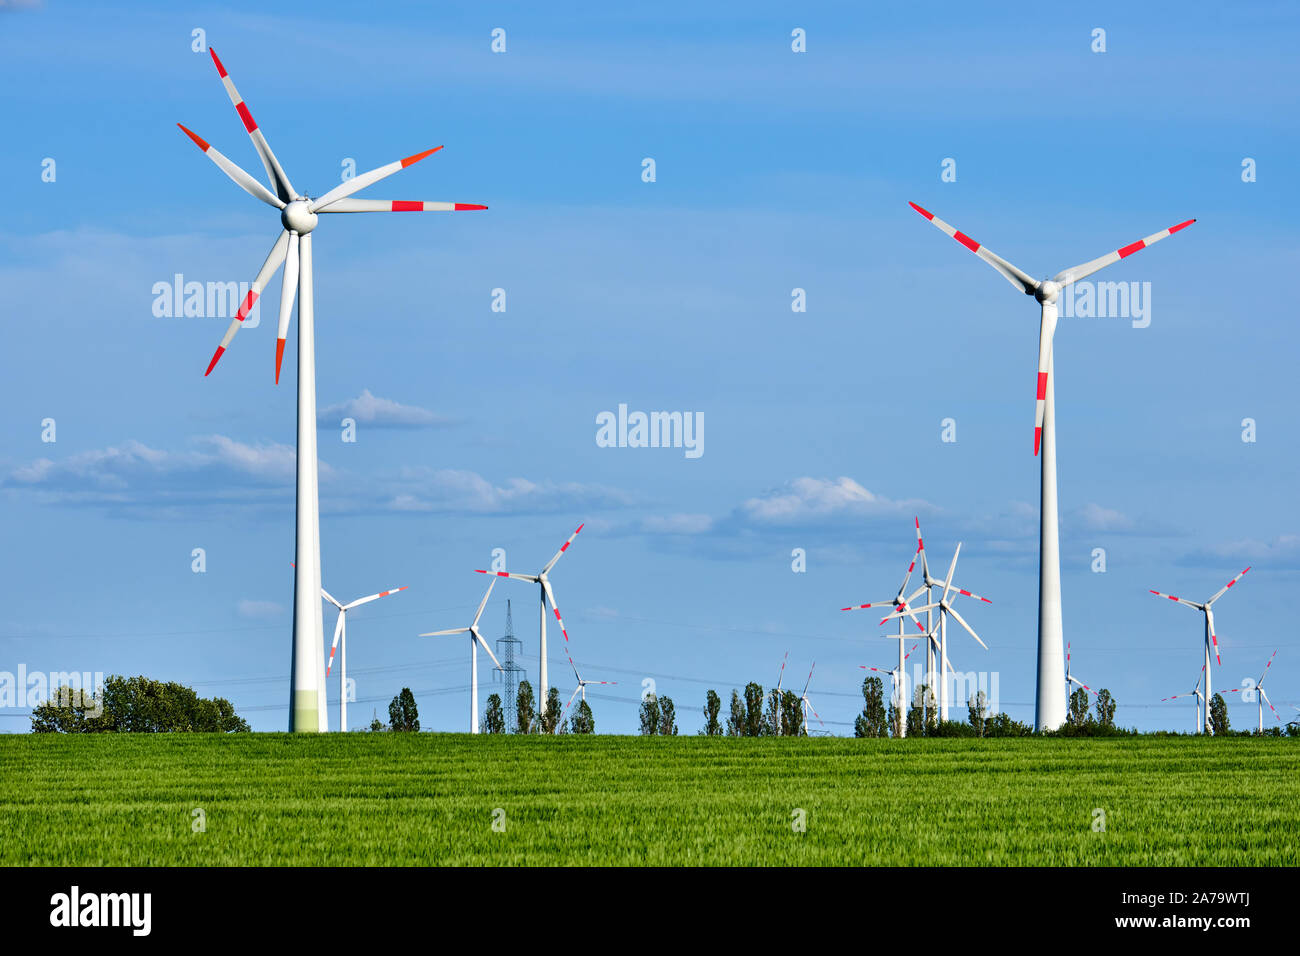 Los generadores de energía eólica moderna en un maizal visto en Alemania Foto de stock